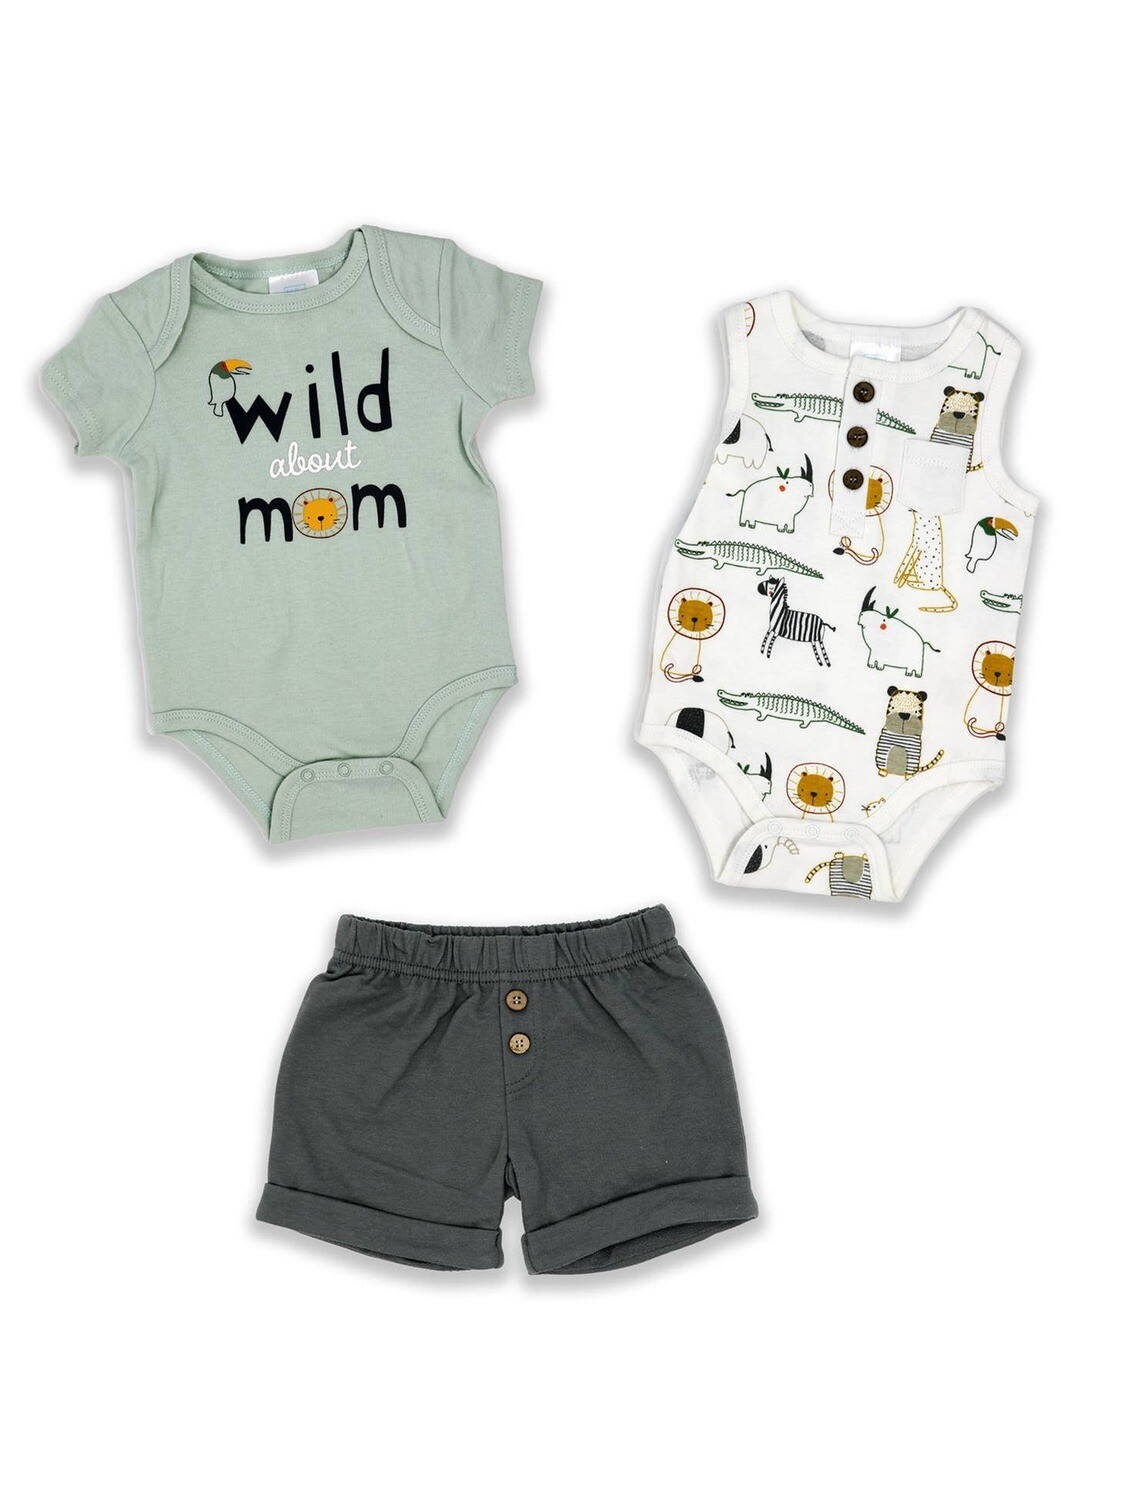 Wild Mom Newborn Set